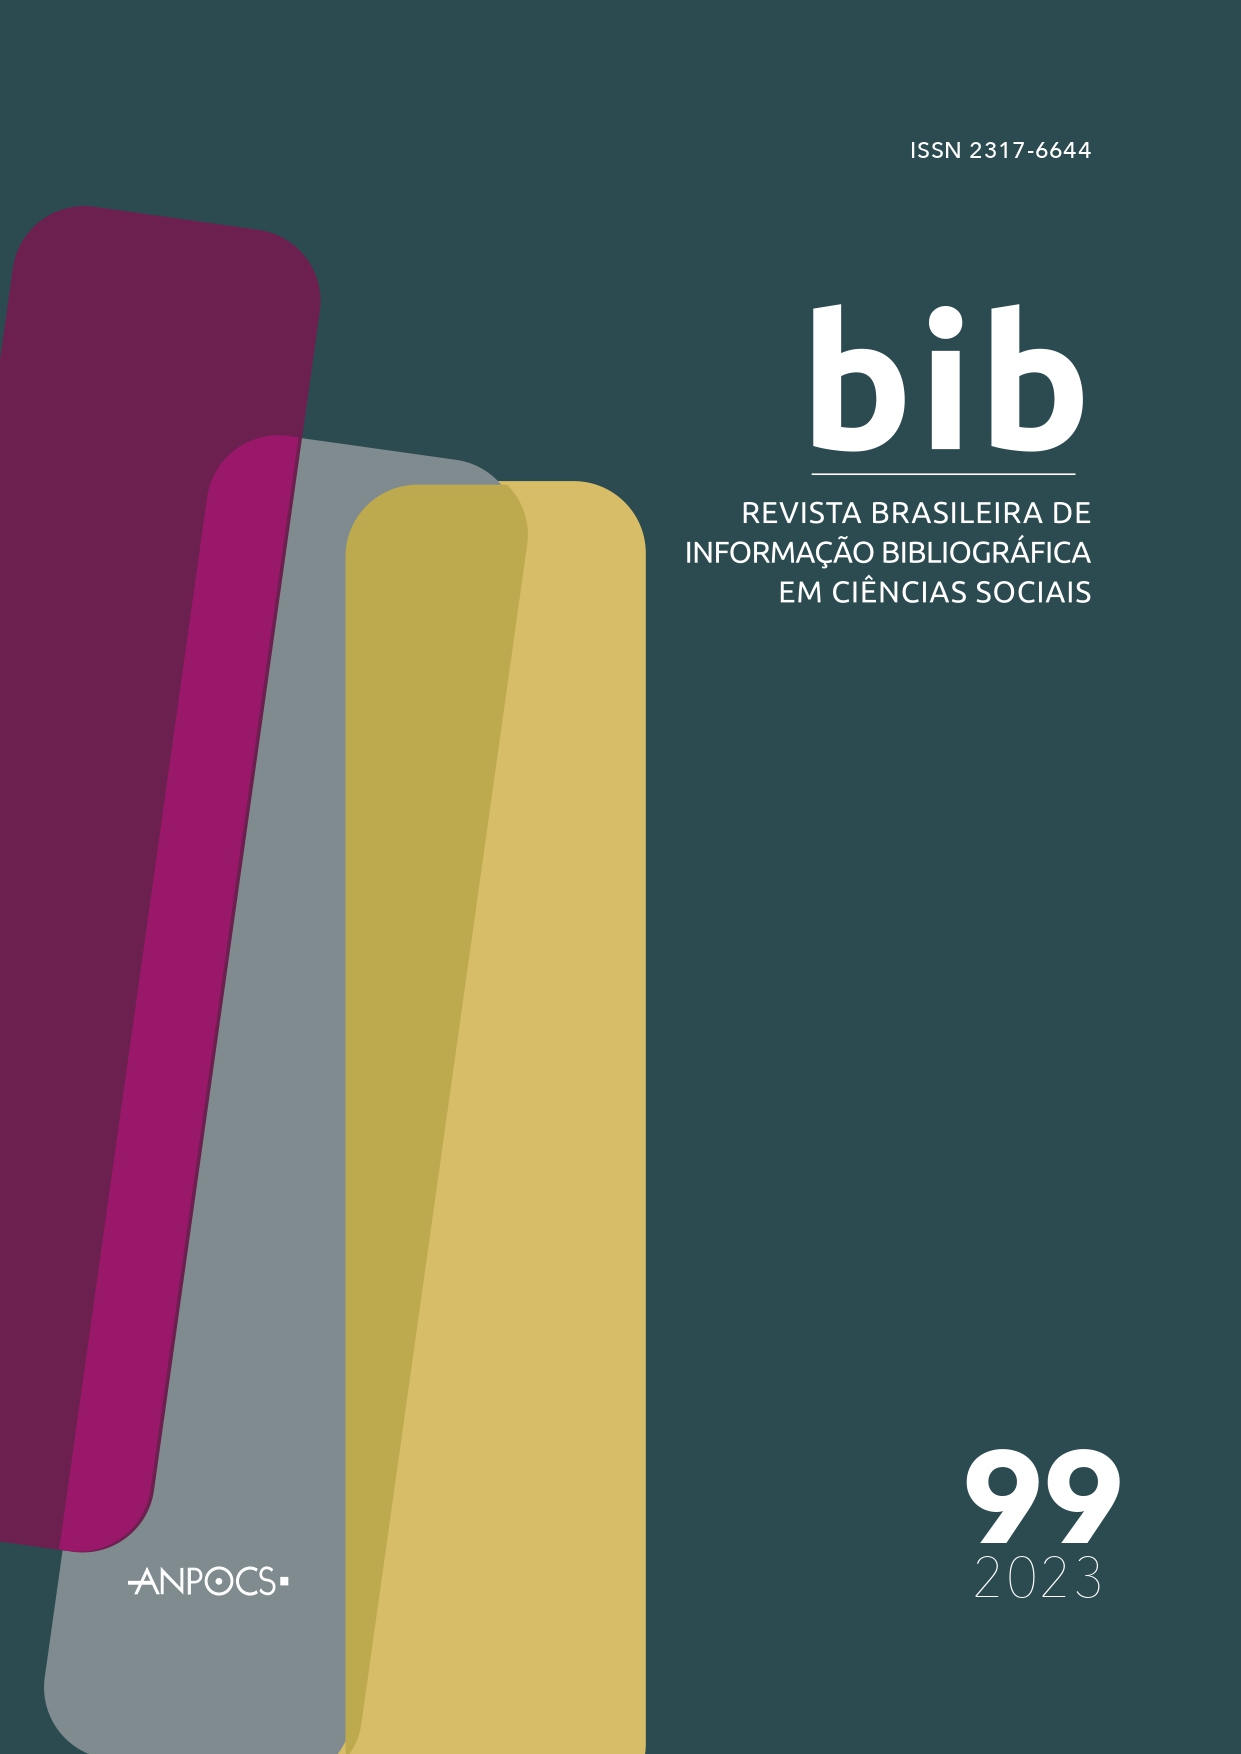 					View No. 99 (2023): Revista Brasileira de Informação Bibliográfica em Ciências Sociais – BIB
				